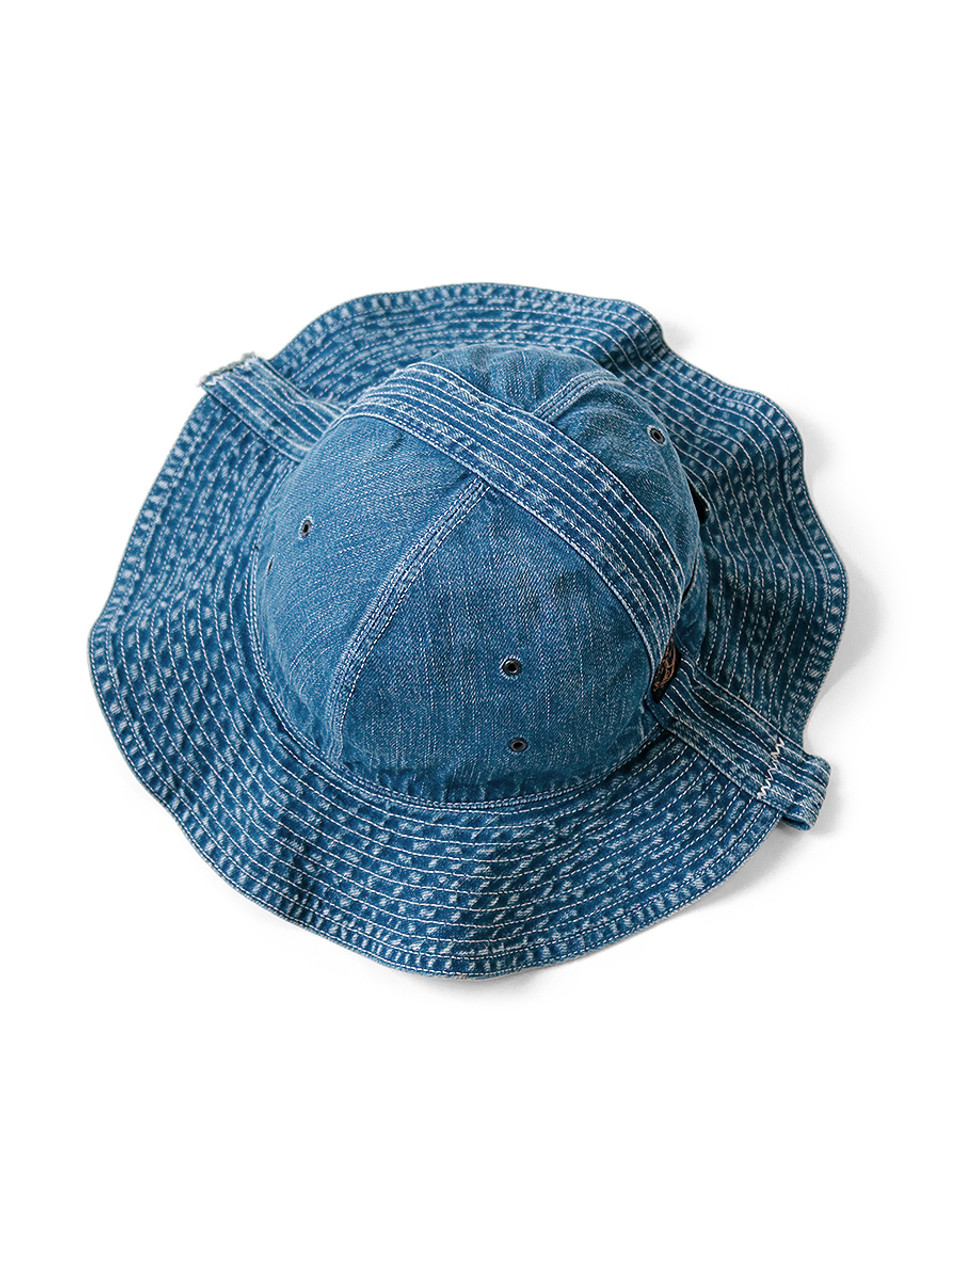 KAPITAL Hat/Cap 11.5Oz Denim Radio Tulip HAT (Processed)